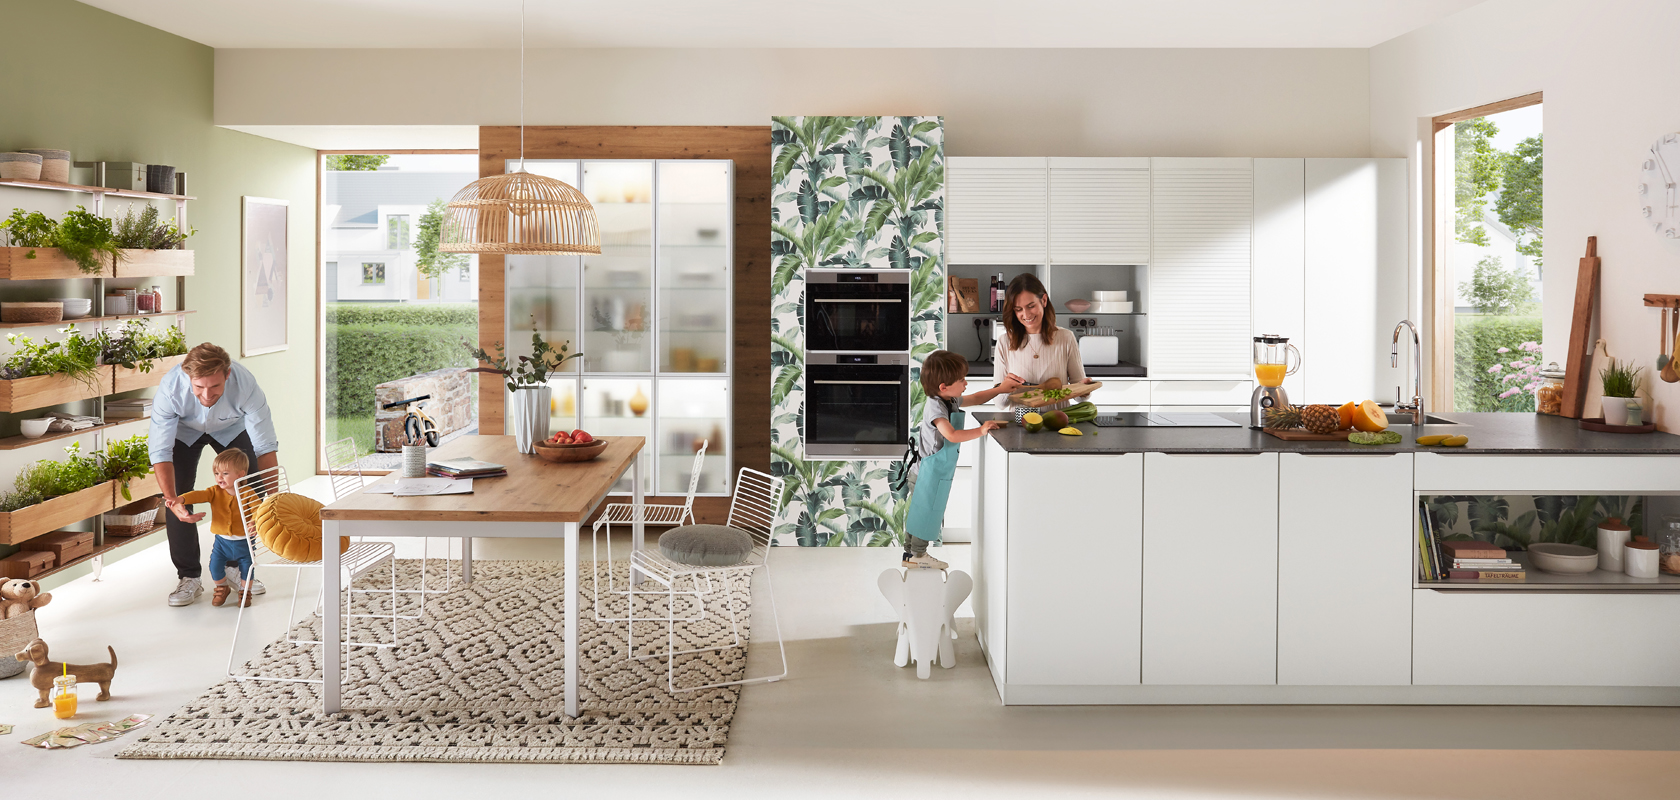 Moderní kuchyňská scéna s rodinou; osoba vařící, dítě hrající si s psem a další osoba pracující u stolu, ukazující živé domácí prostředí.